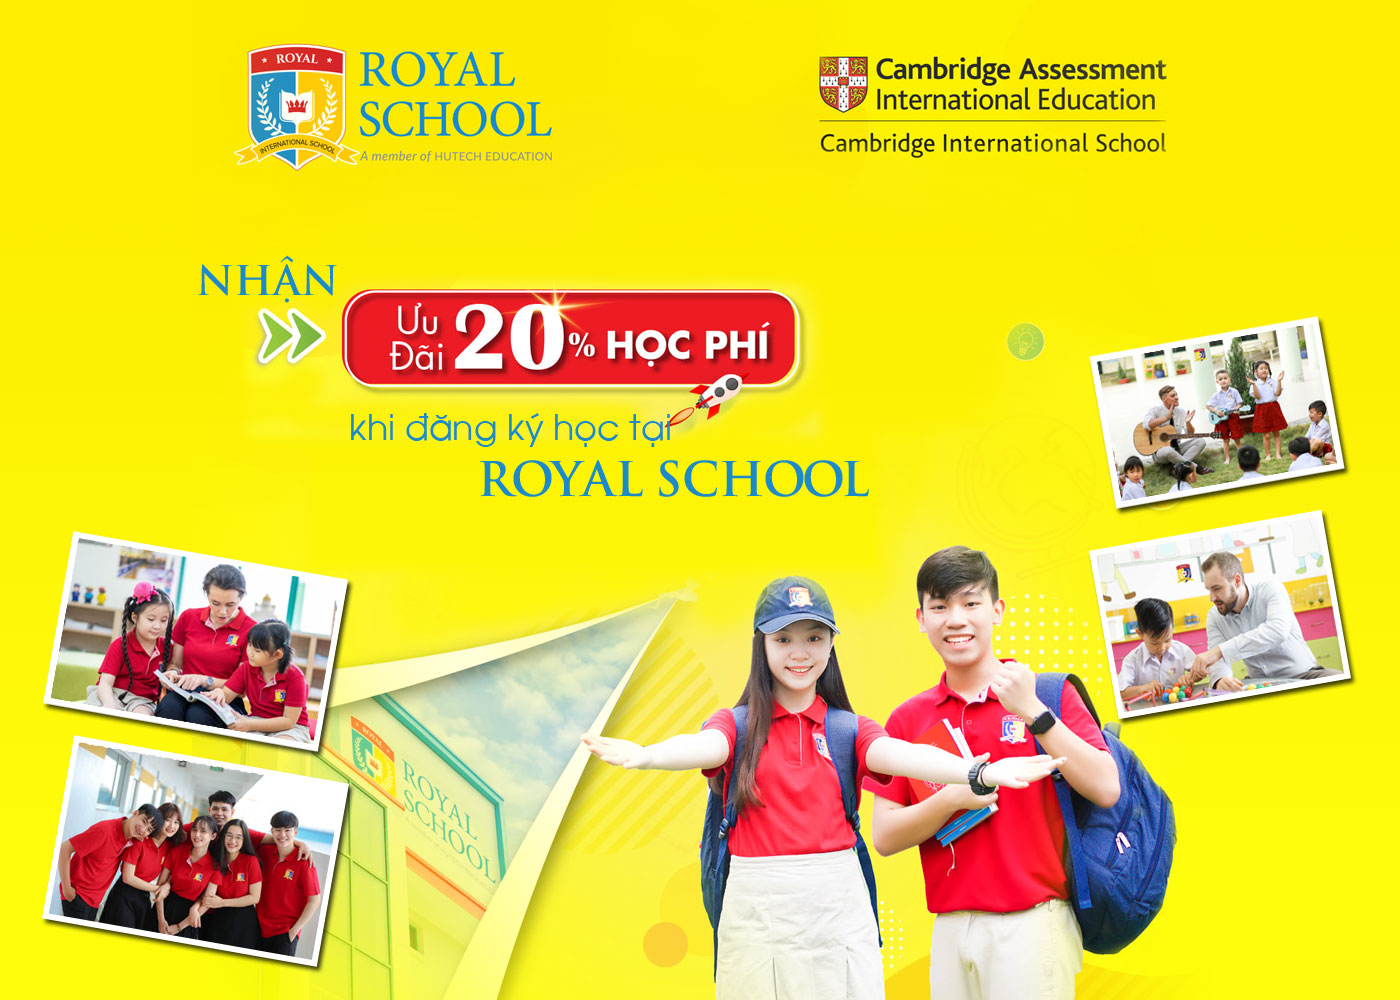 Nhận ưu đãi 20% học phí khi đăng ký học tại Royal School - Ảnh 1